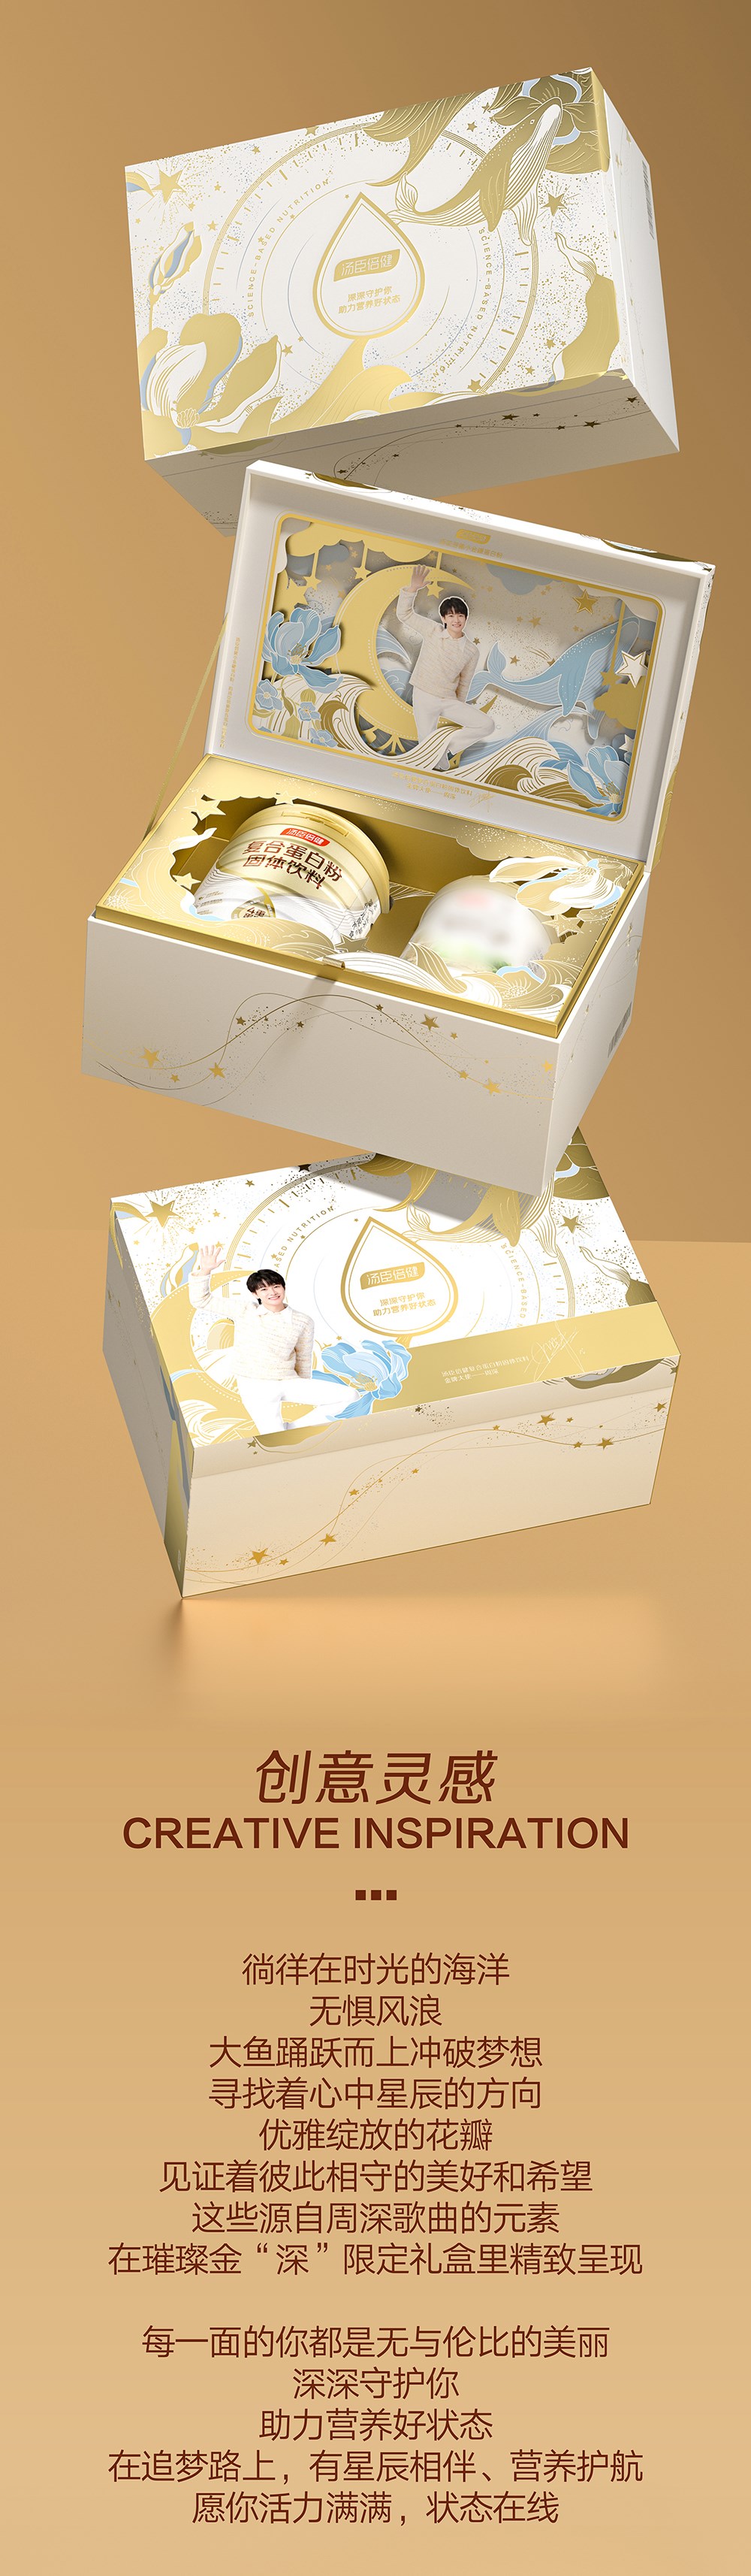 汤臣倍健产品礼盒设计 插画礼盒设计 38节日礼盒设计